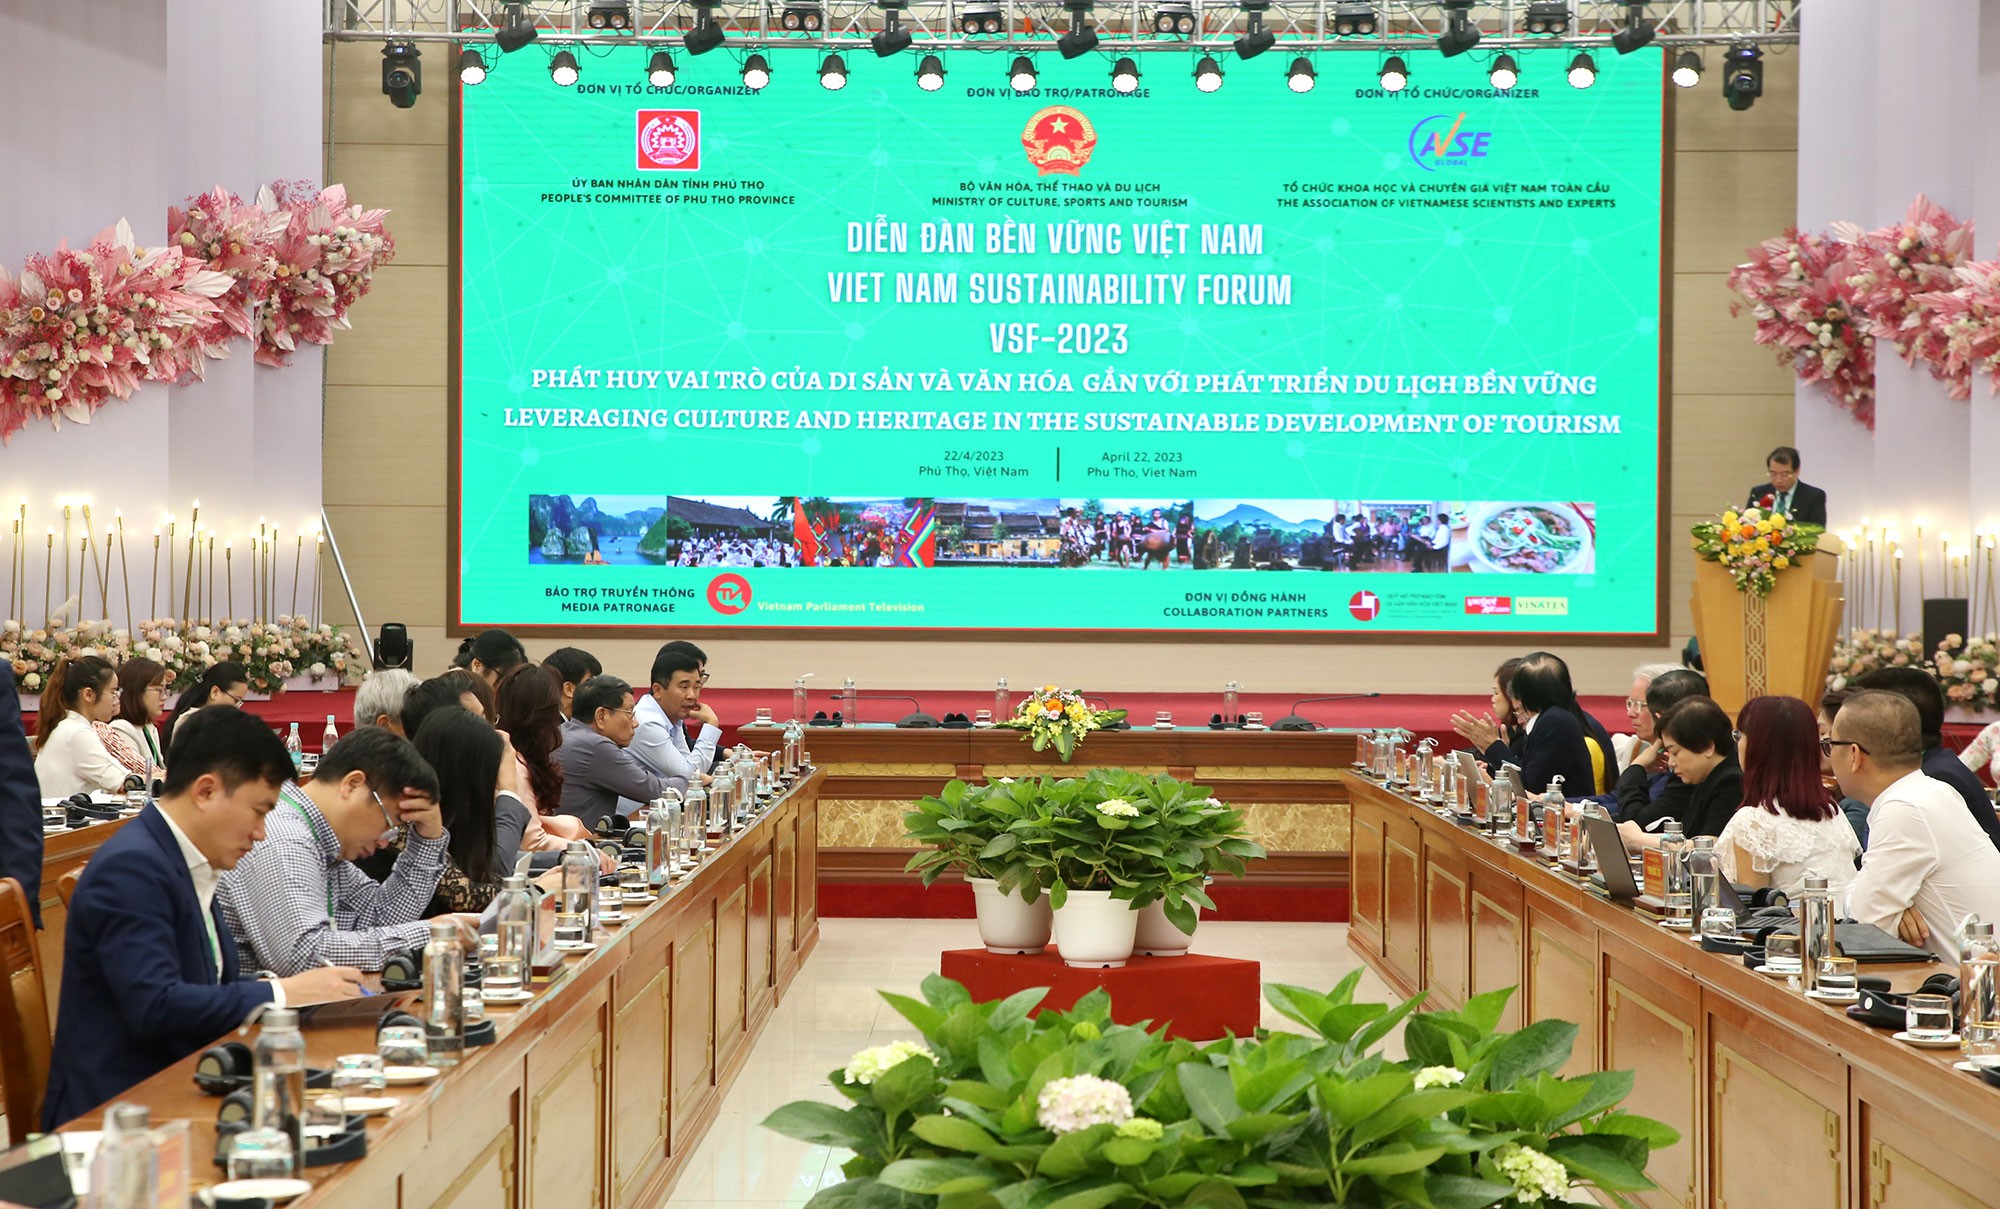 Diễn đàn Bền vững Việt Nam 2023: Phát huy vai trò của di sản văn hóa gắn với phát triển du lịch bền vững